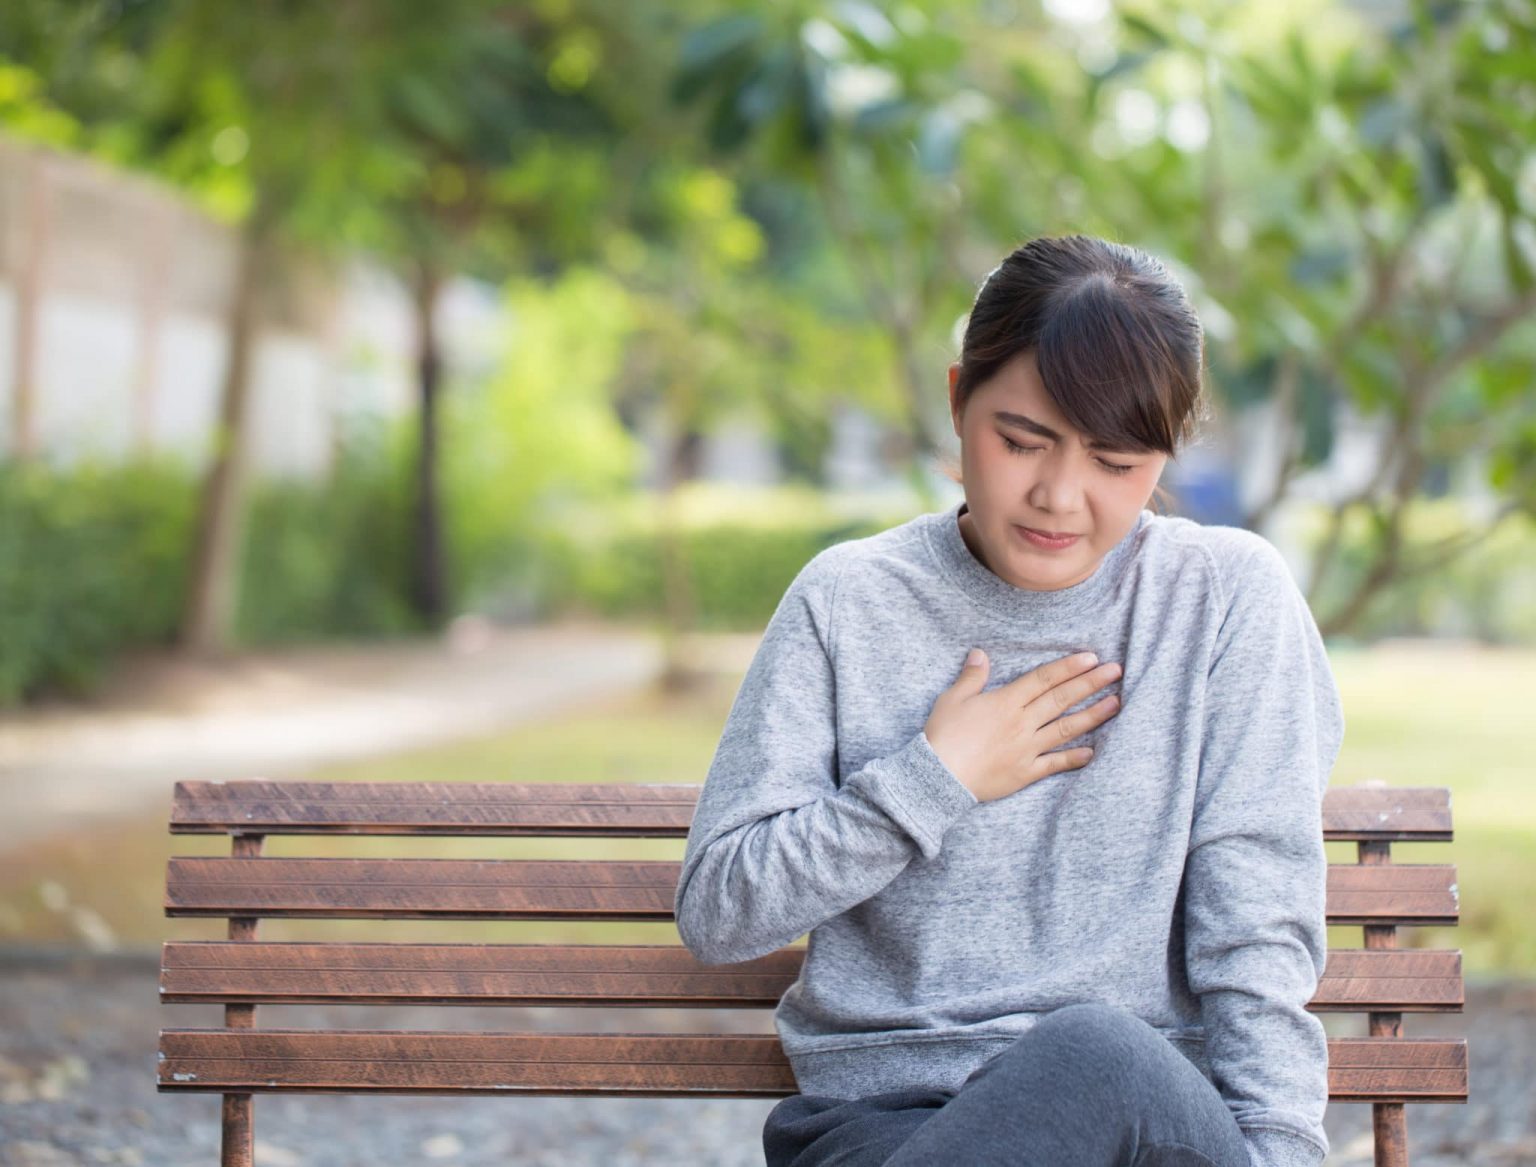 Woman suffering from gastroesophageal reflux disease